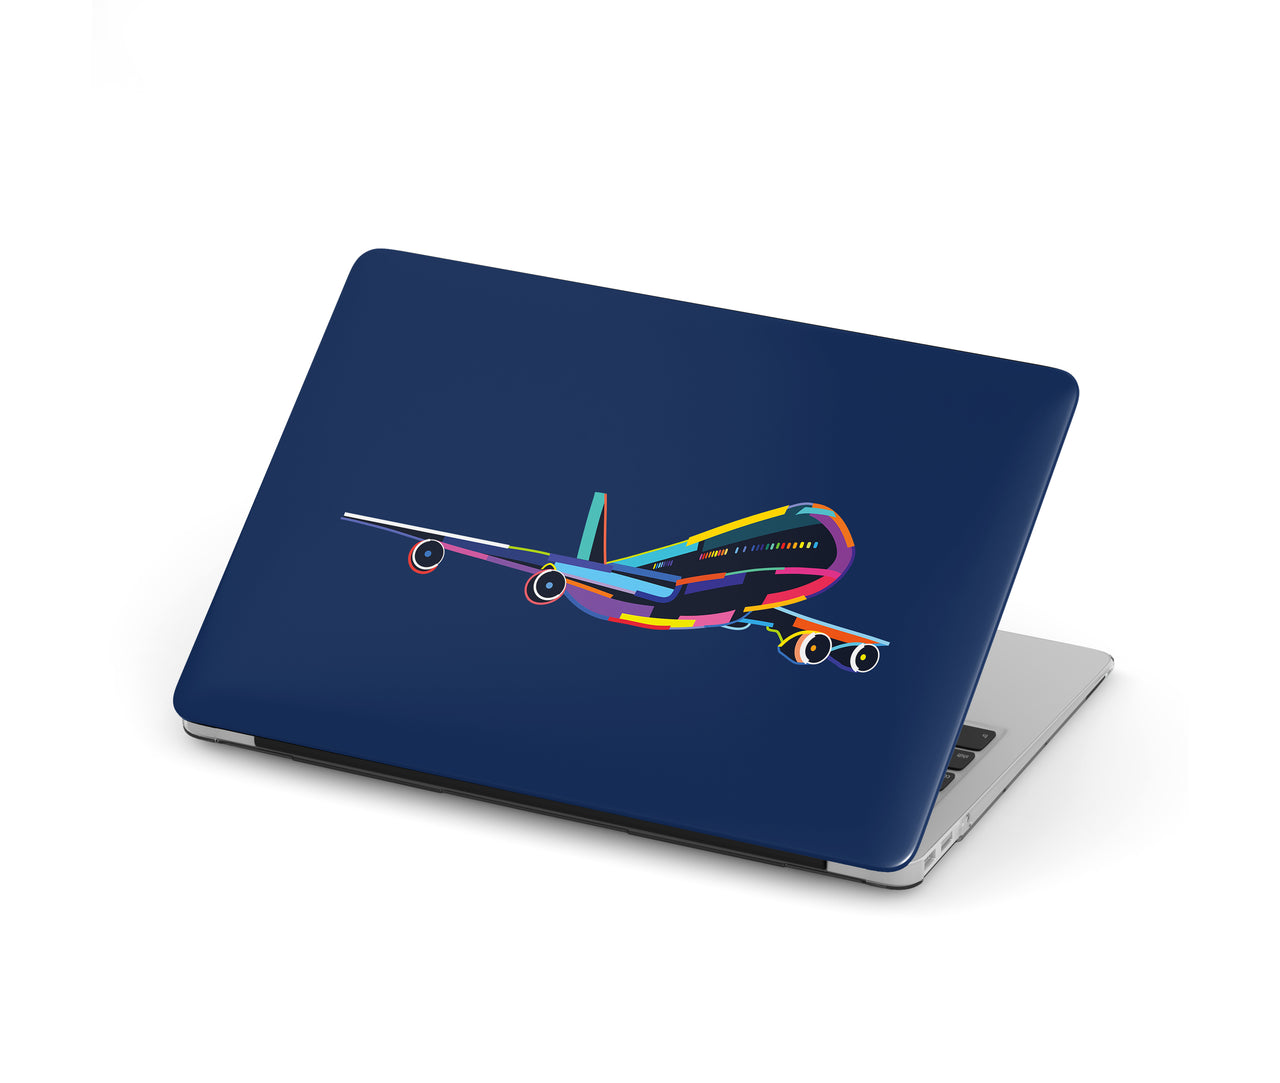 Multicolor Airplane Designed Macbook Cases